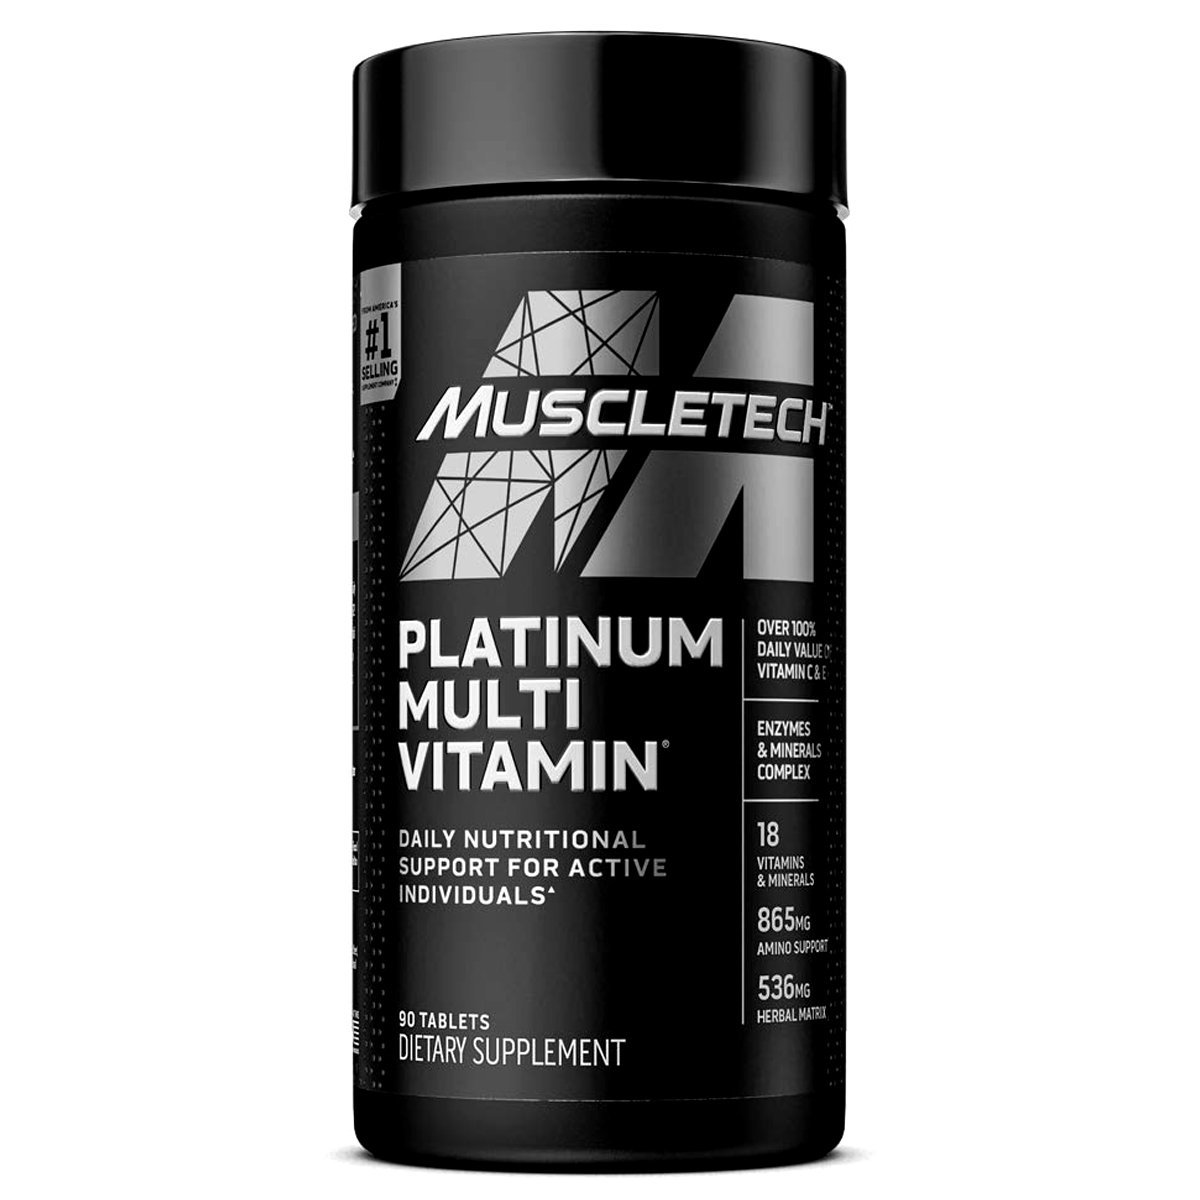 Muscletech Essential Series Platinum Multi Vitamin